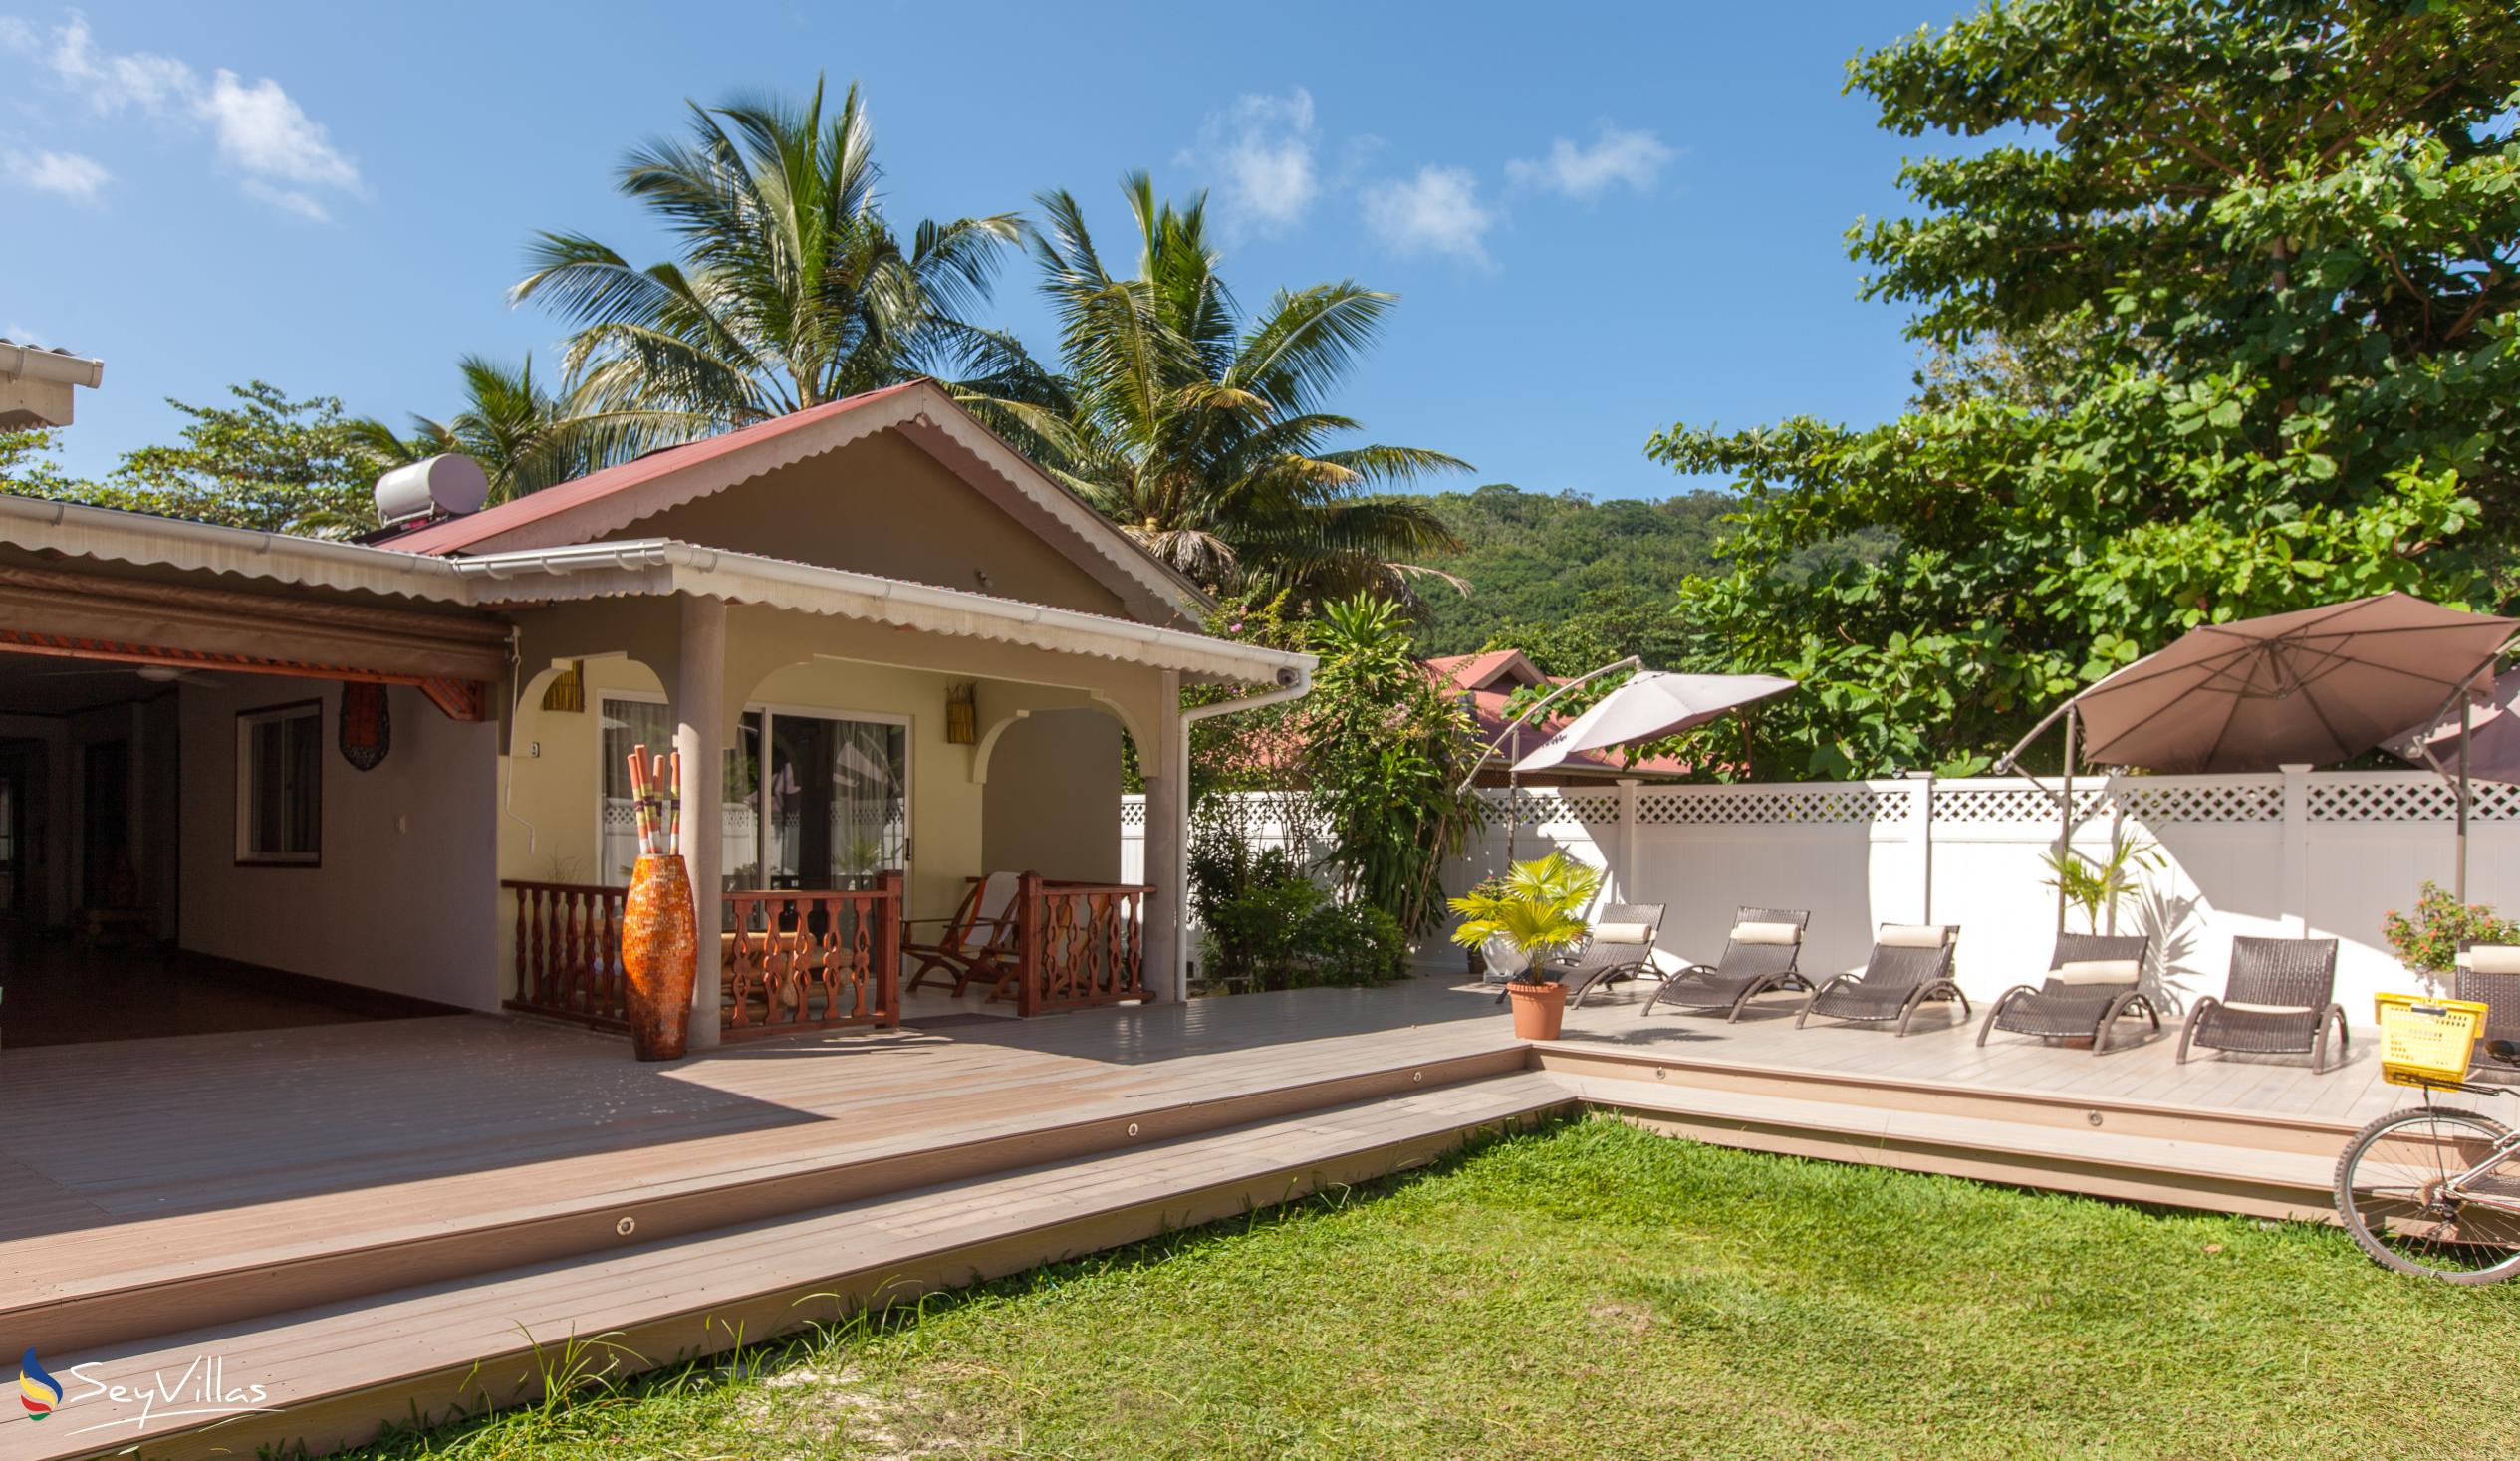 Foto 6: Villa Authentique - Extérieur - La Digue (Seychelles)